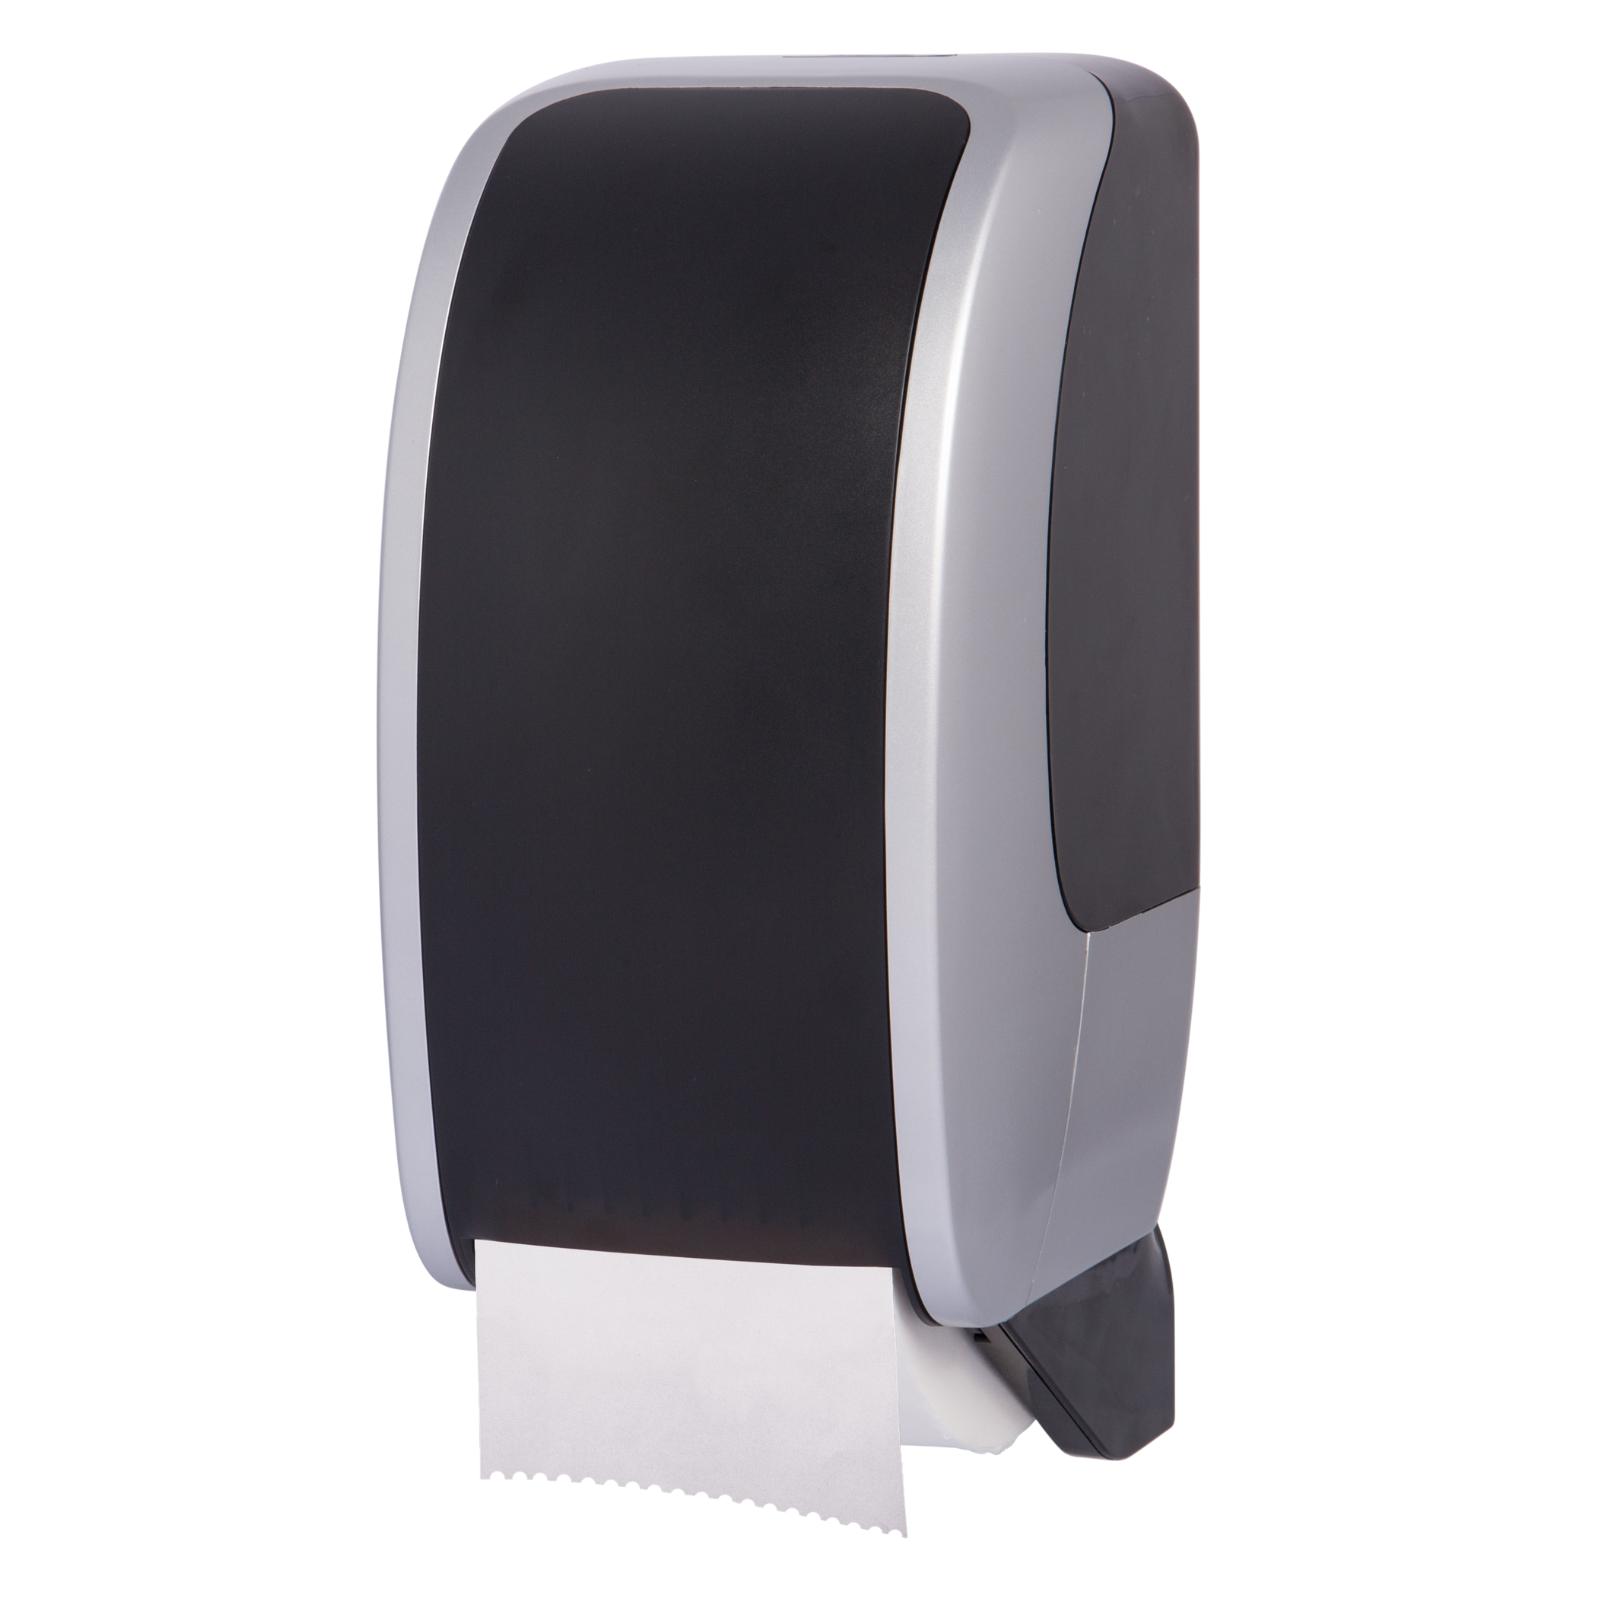 Pura - Toilet Roll Dispenser - White/Black